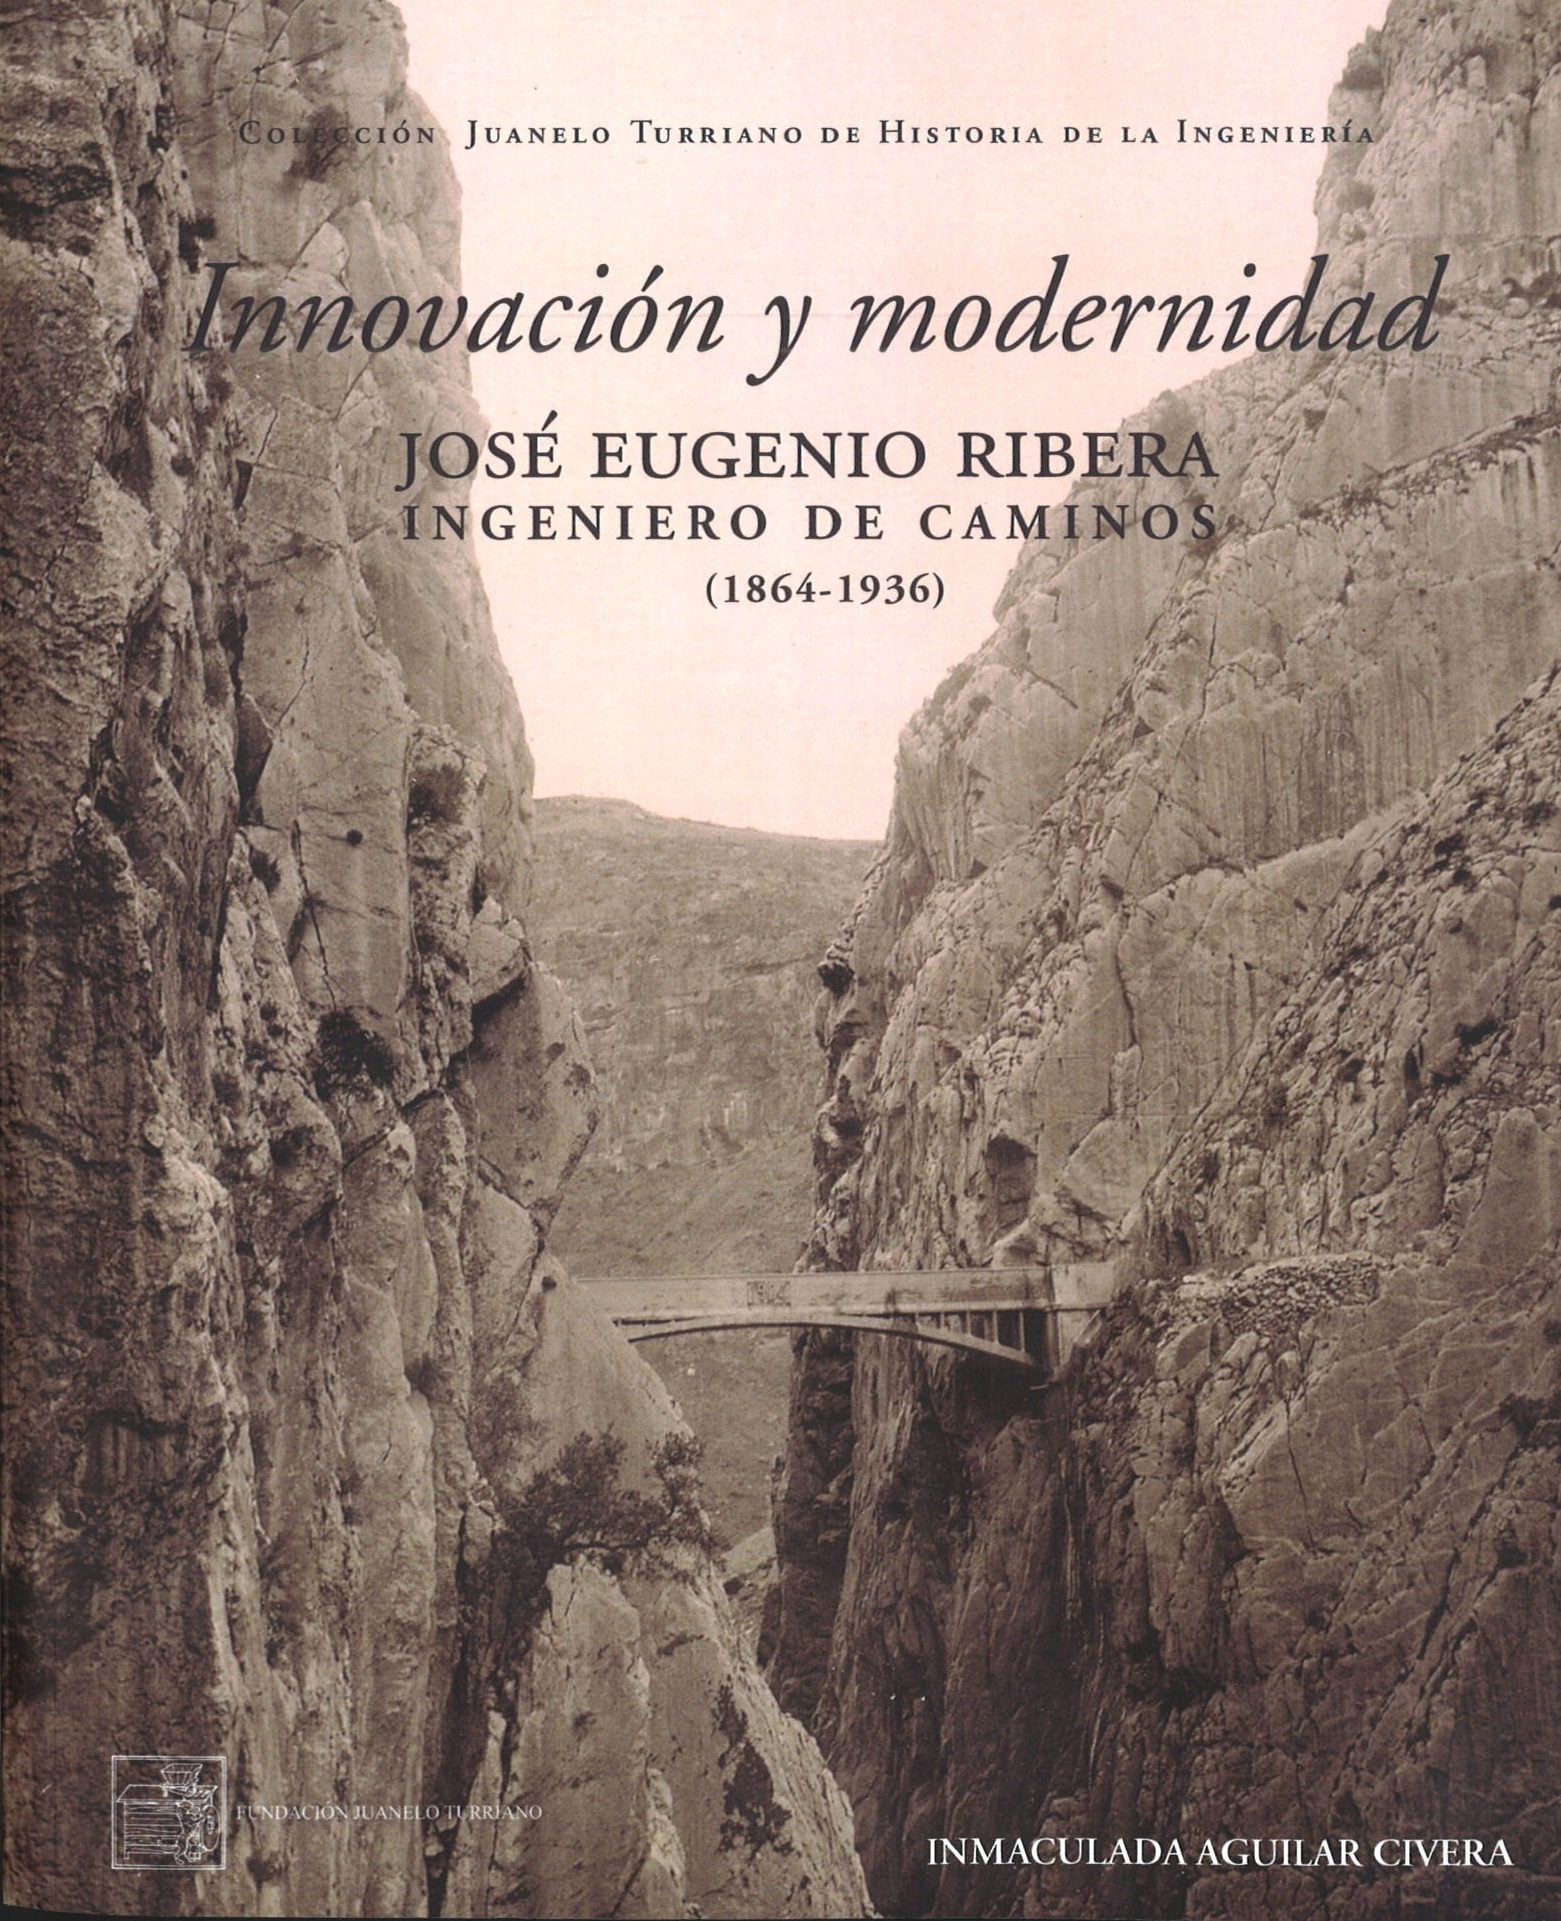 Innovación y modernidad. José Eugenio Ribera Ingeniero de Caminos (1864-1936) [Innovation and modernity. José Eugenio Ribera, Civil Engineer (1864-1936)]. New publication